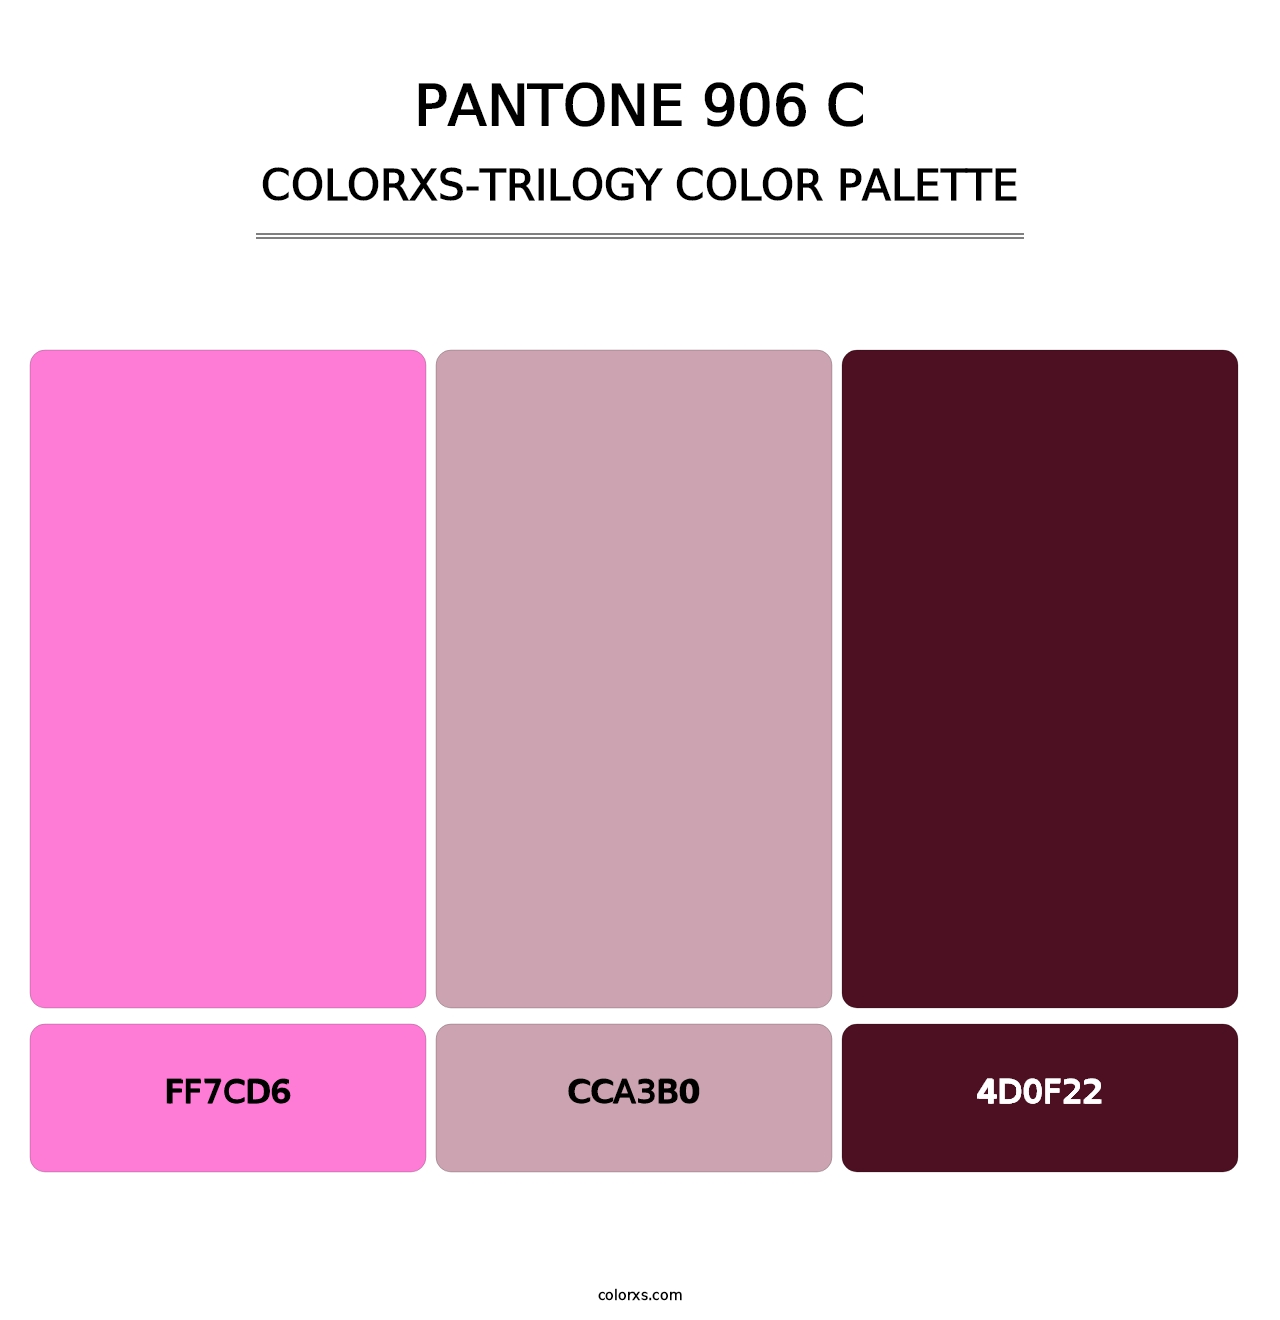 PANTONE 906 C - Colorxs Trilogy Palette